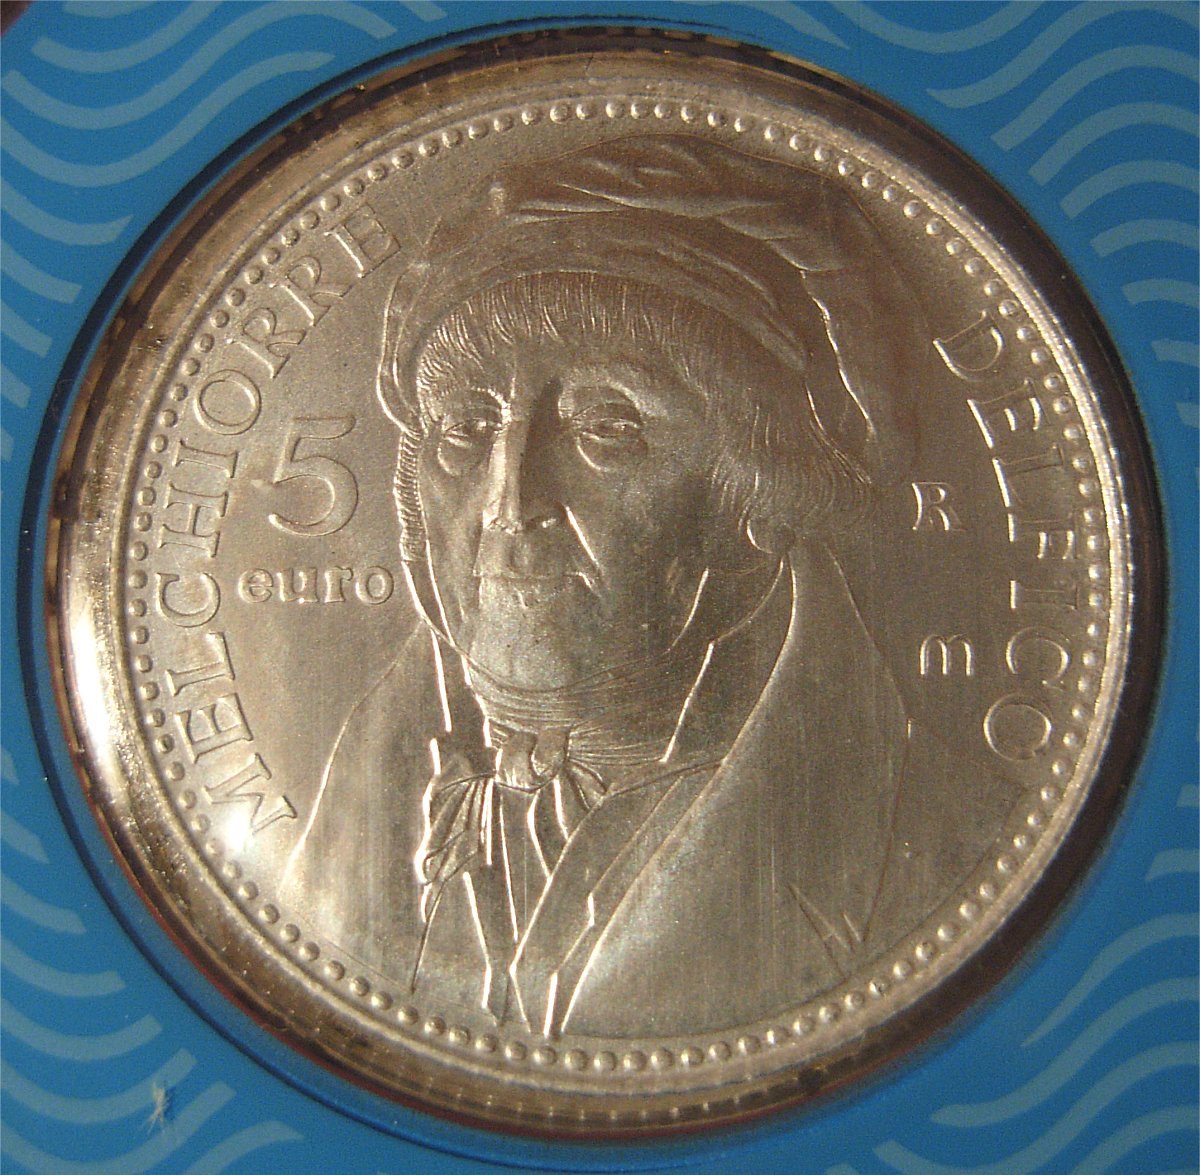 Lato anteriore della moneta da €5 in argento con effige di Melchiorre Delfico